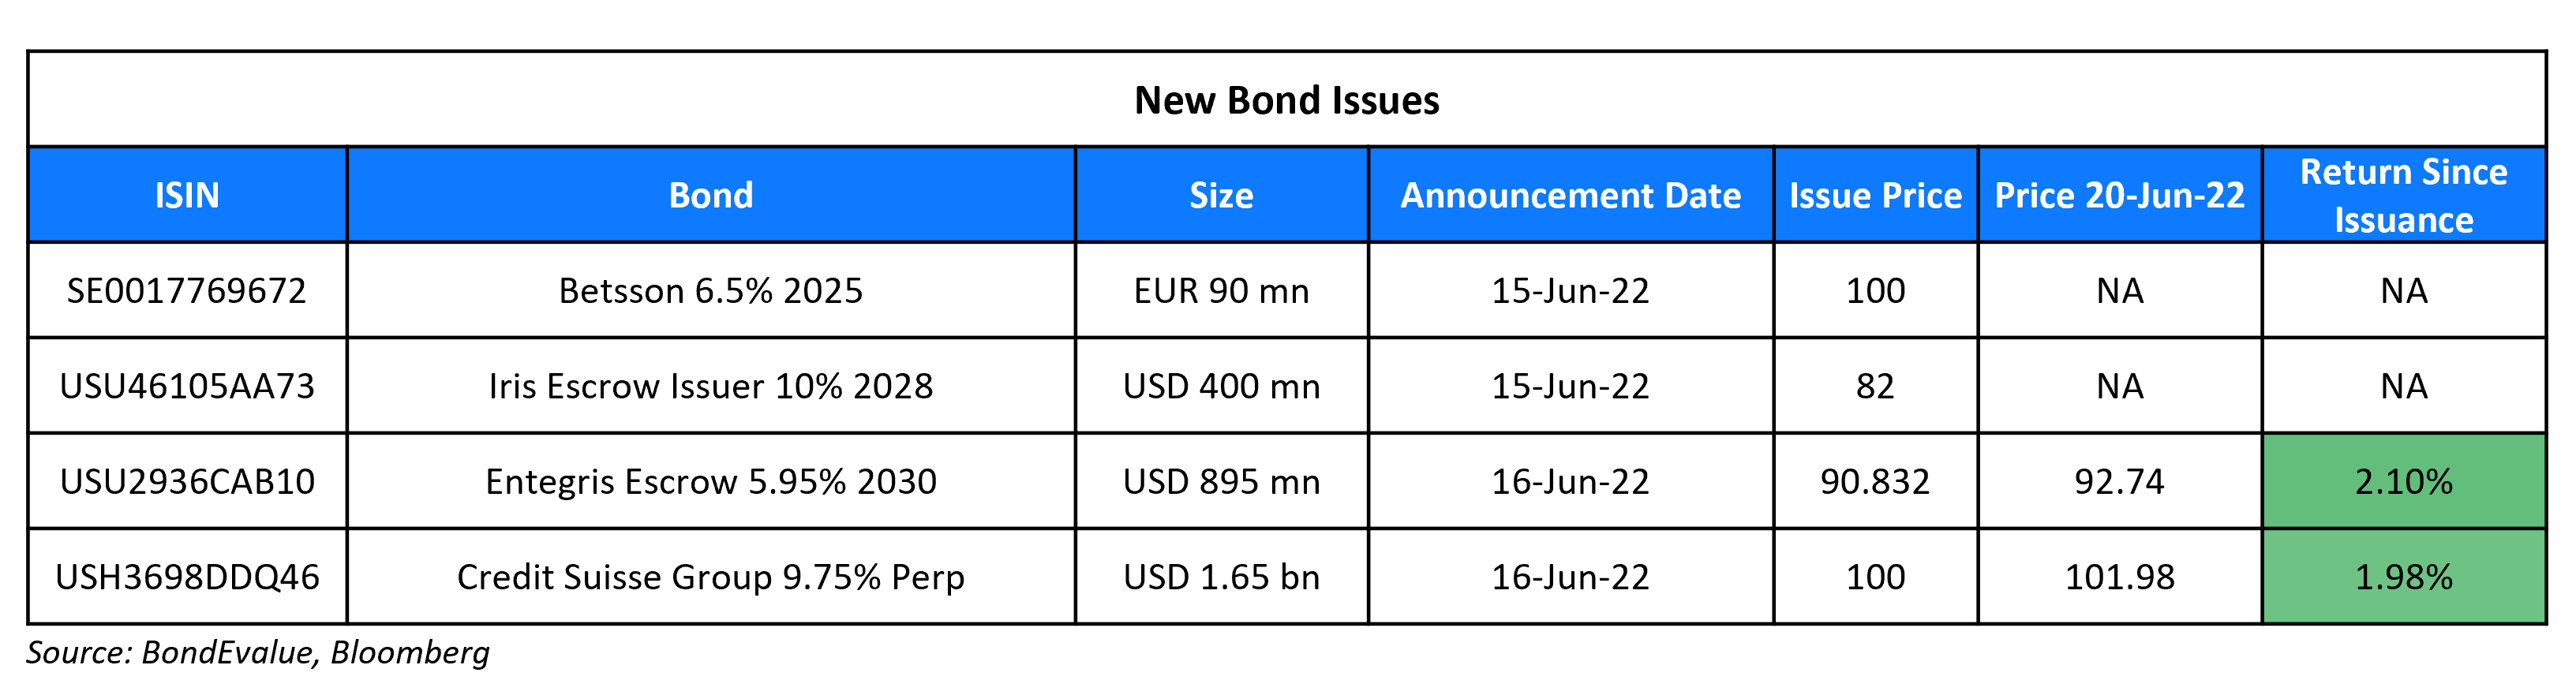 New Bond Issues 20 Jun 22